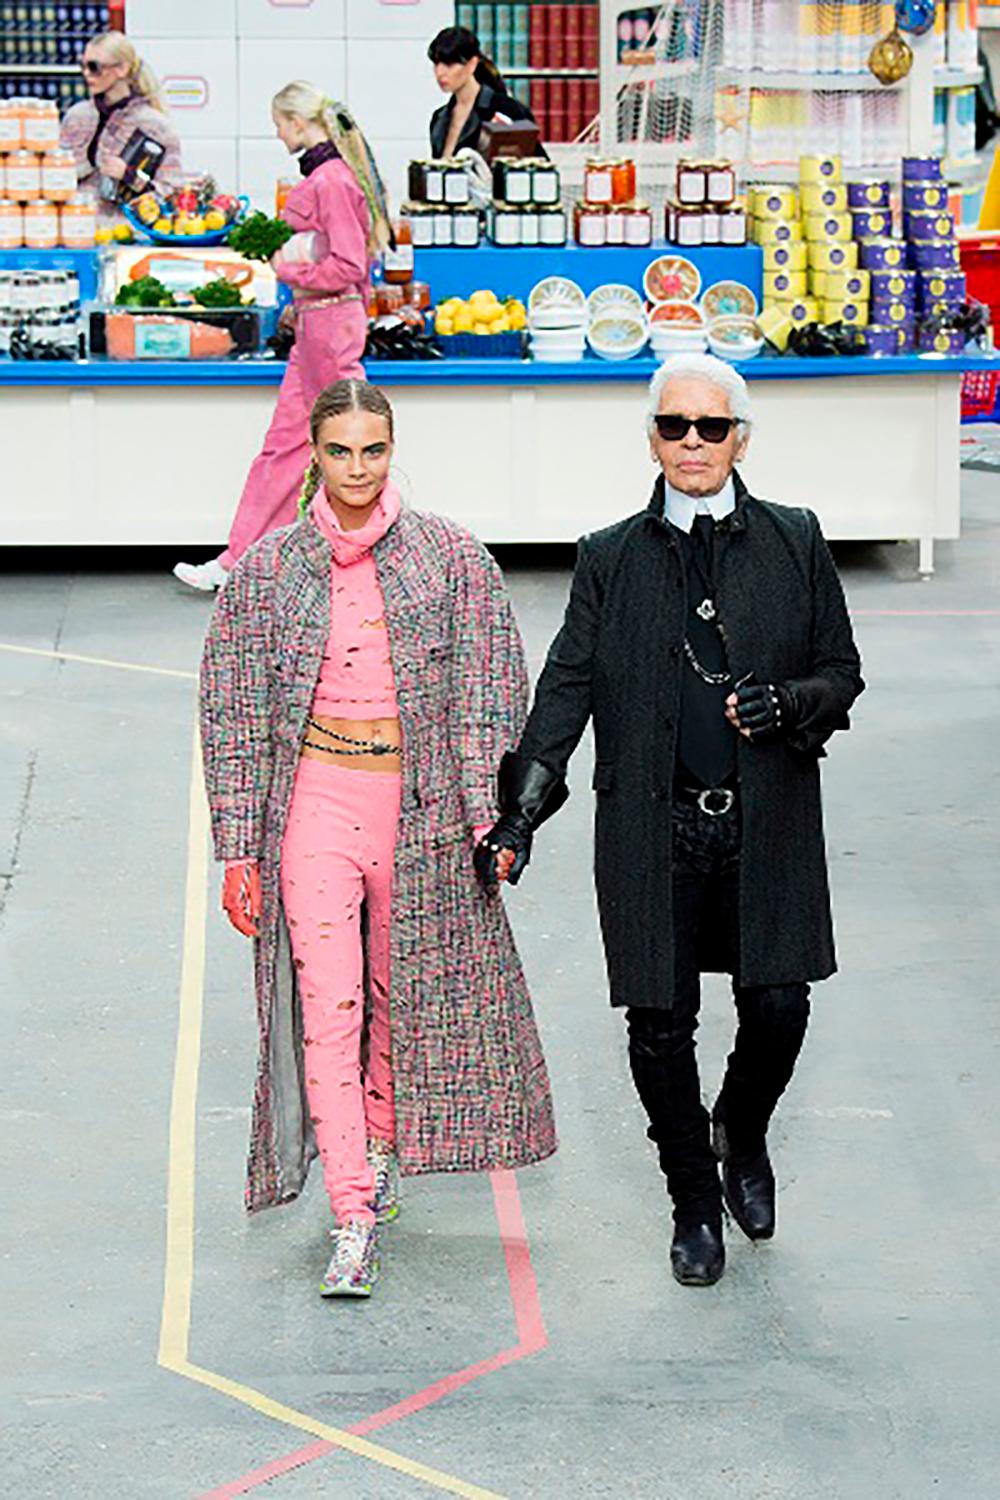 New Icon Chanel distressed knit legging von Runway of SUPERMARKET Collection, 
- Wie bei Cara Delevingne auf dem Catwalk gesehen!
Erkennbarstes Element der Collection'S.
- CC-Logo-Charme an der Taille
- aus weichster Strickmischung
Größenbezeichnung